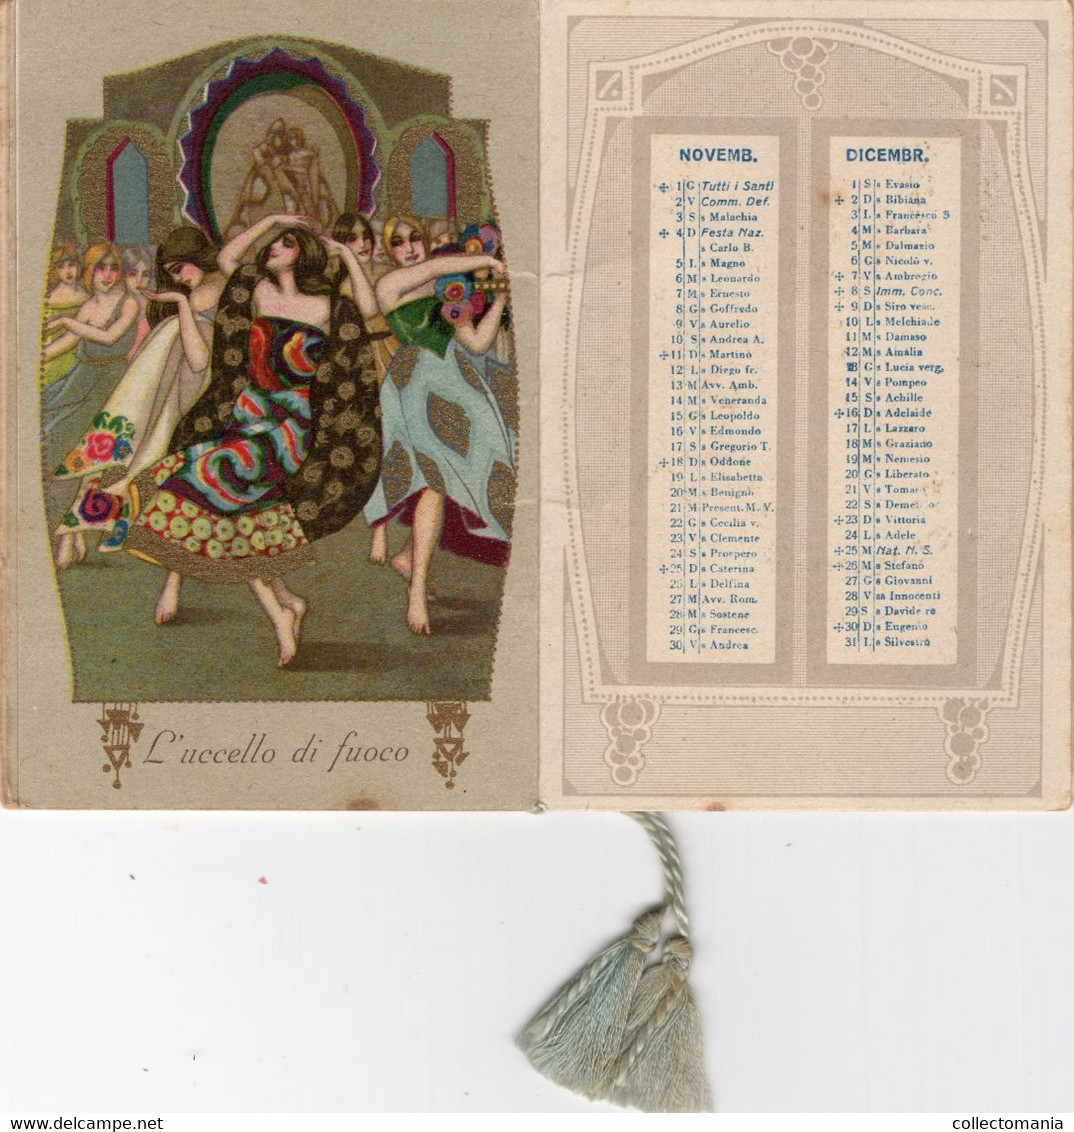 1 Carnet Booklet   RUSSIA Ballets Russes l'Oiseau de Feu The Firebird de Vuurvogel Calendrier 1928 Ilustr. De Bellys